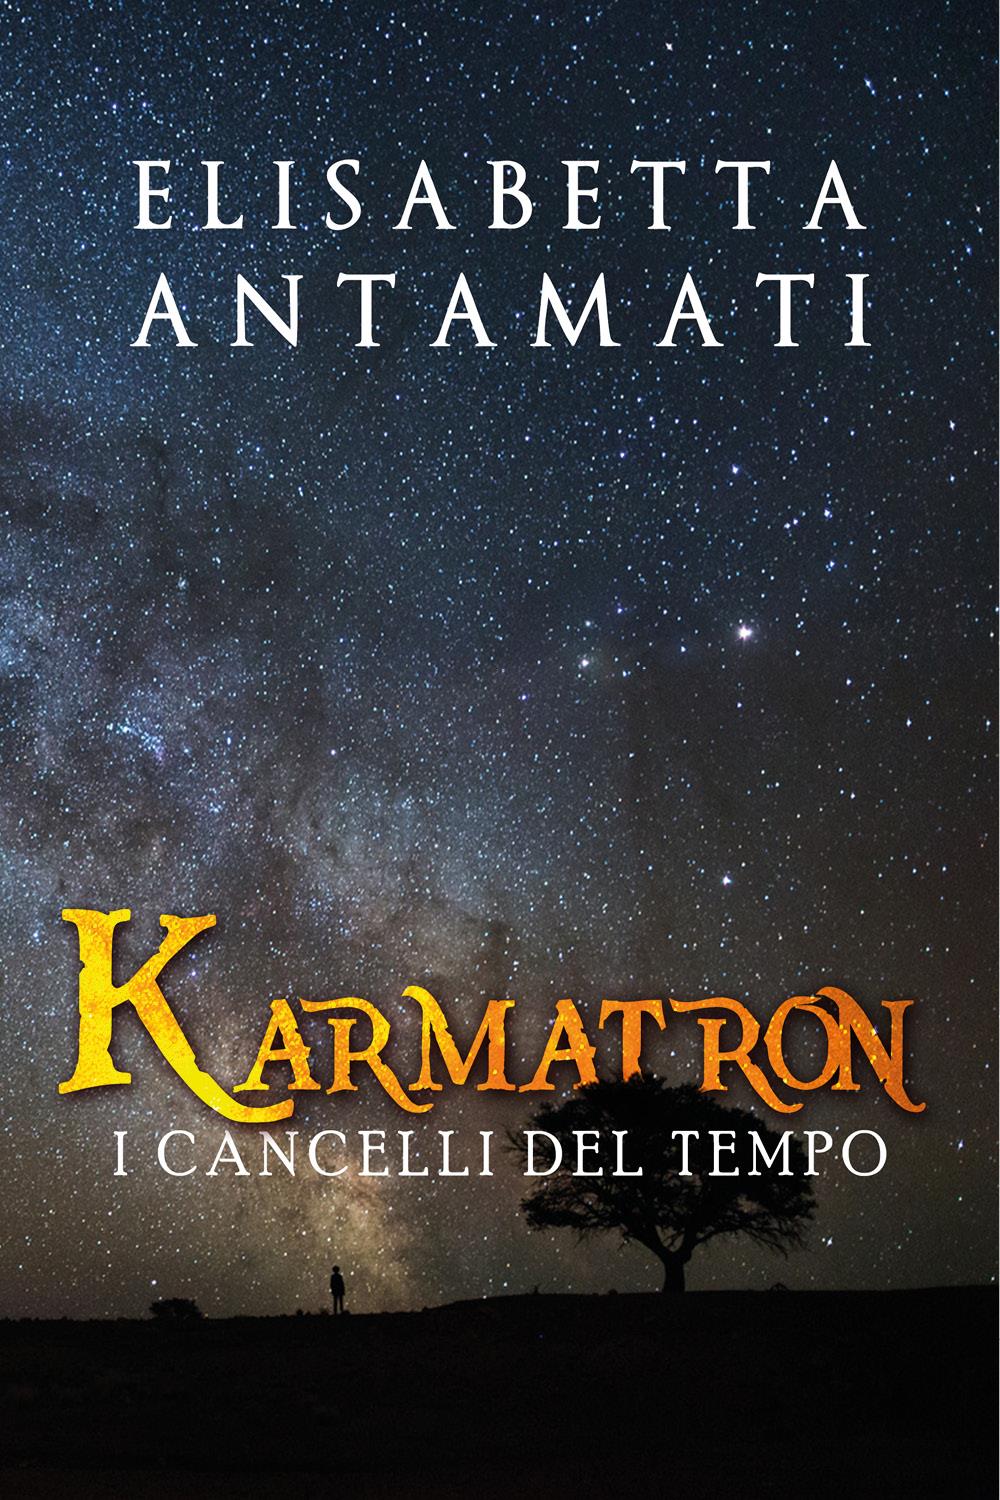 Karmatron: I Cancelli del Tempo